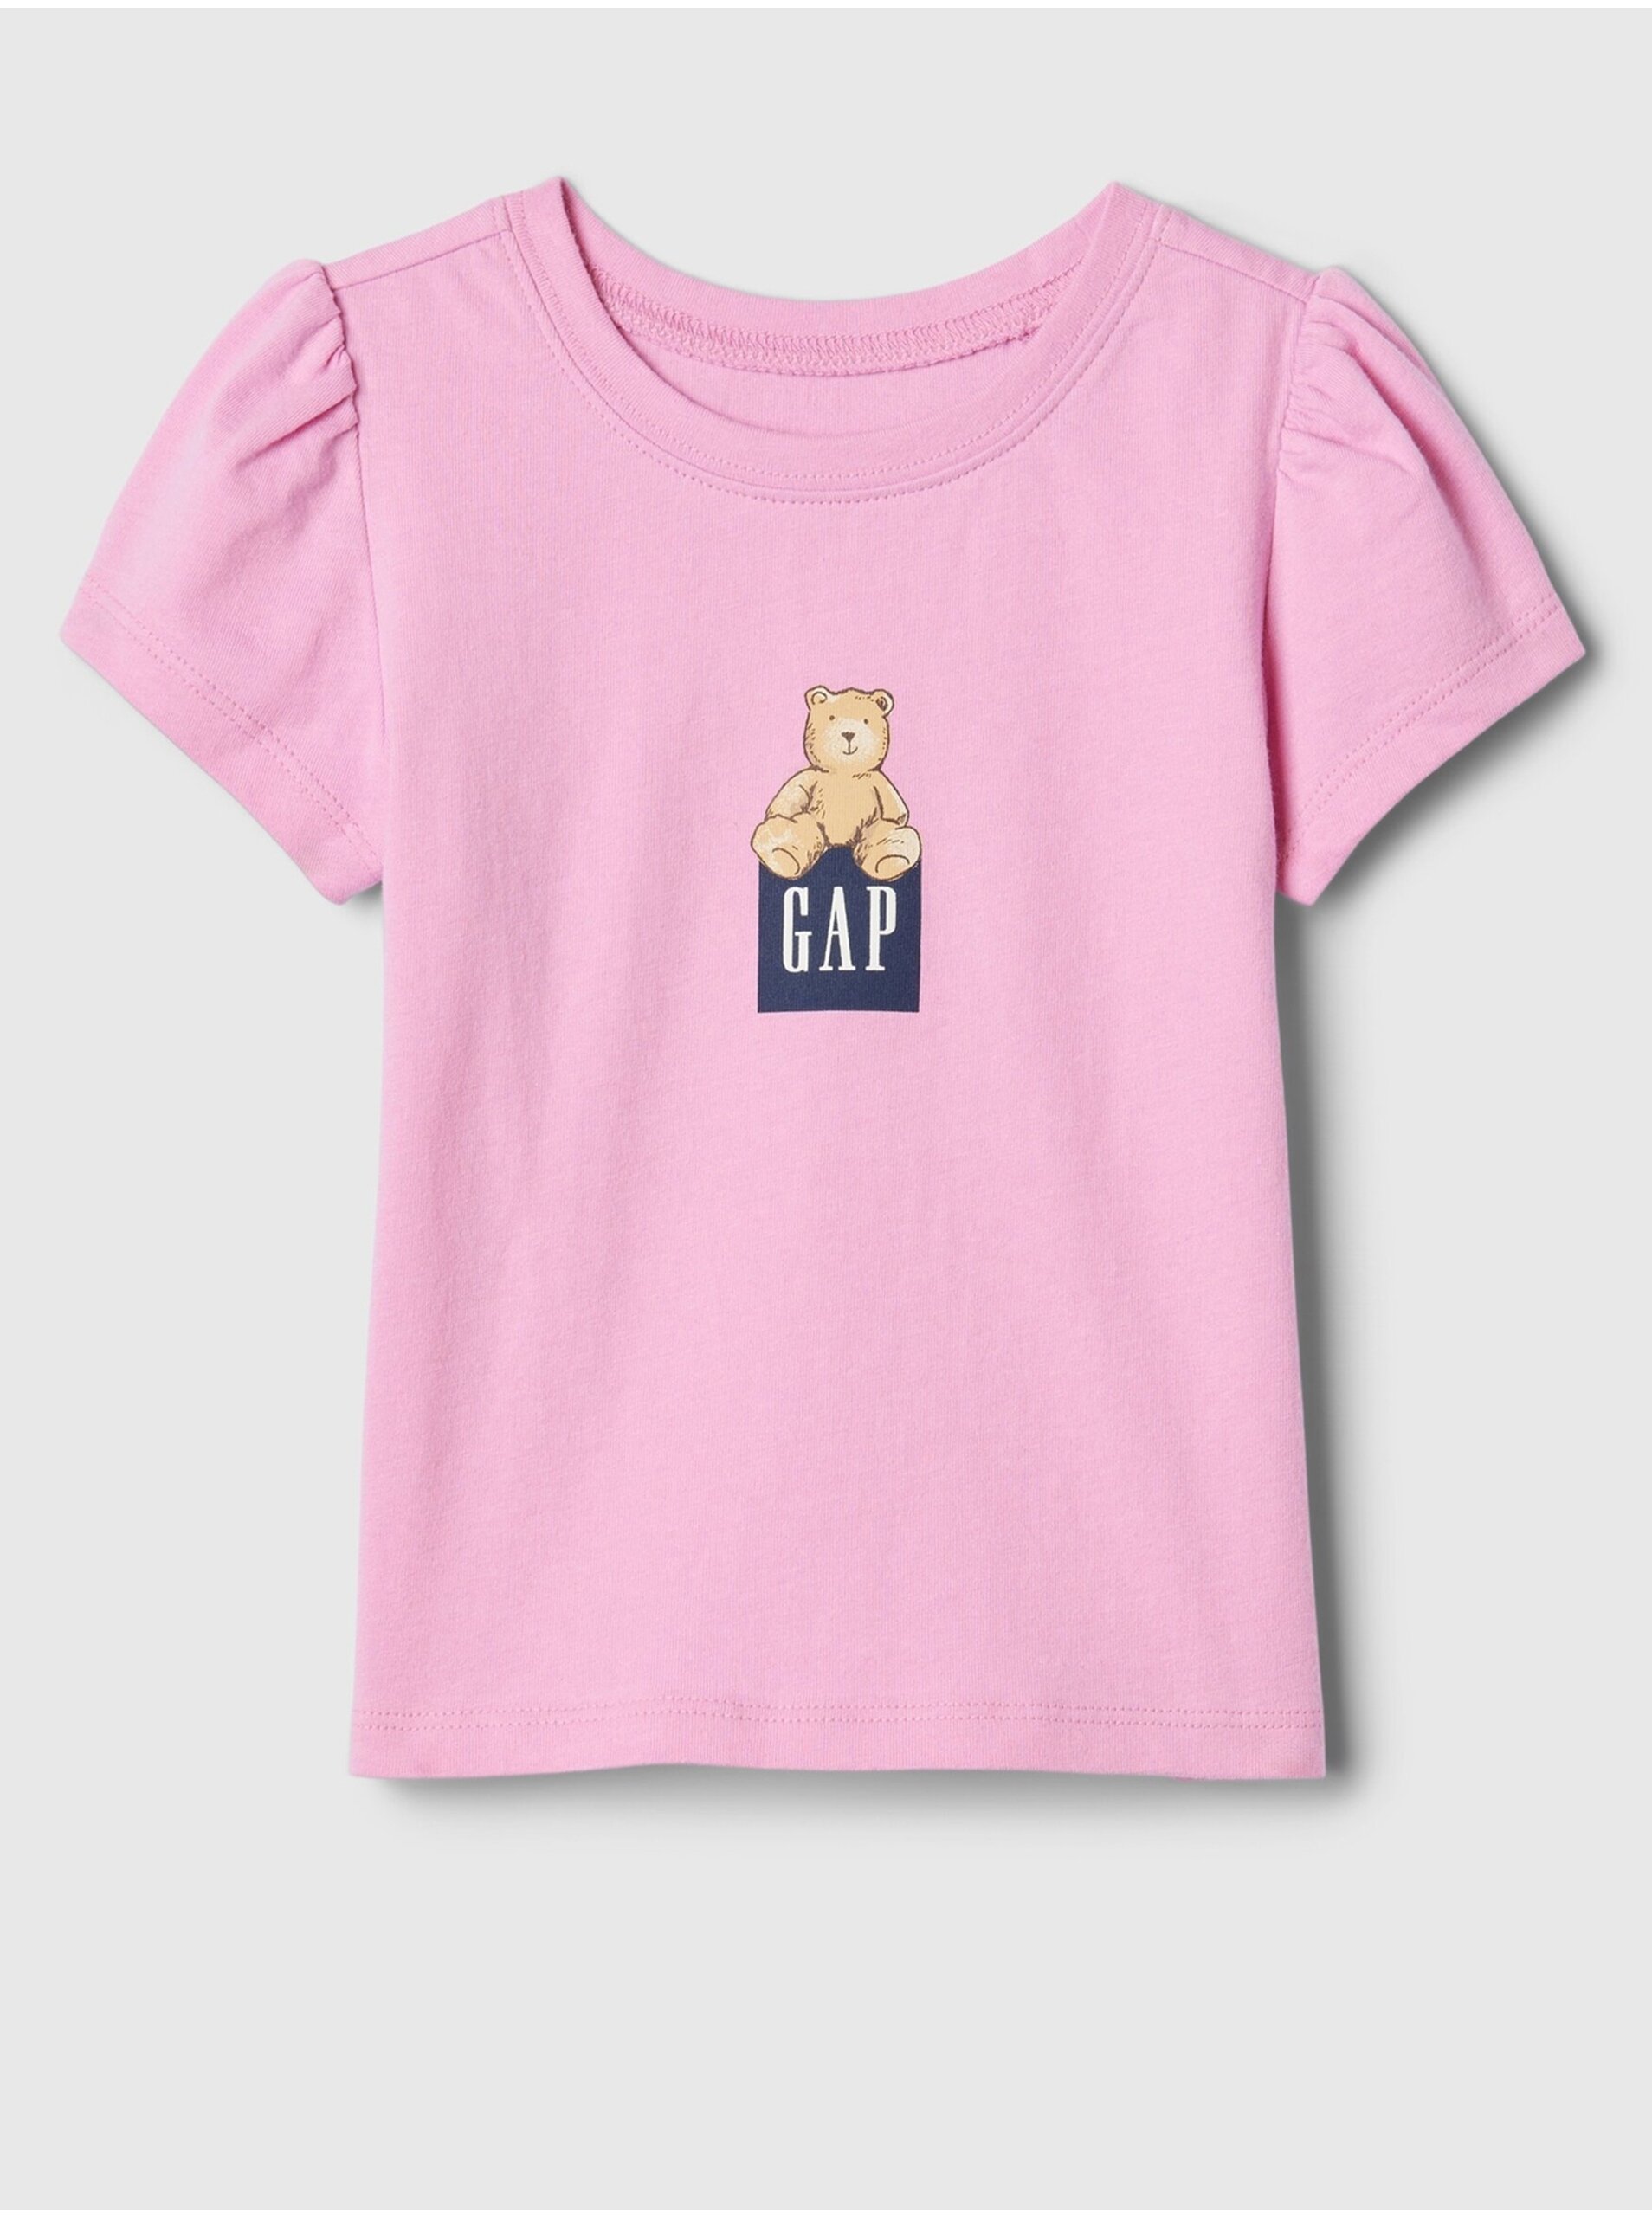 E-shop Ružové dievčenské tričko s logom GAP Brannan